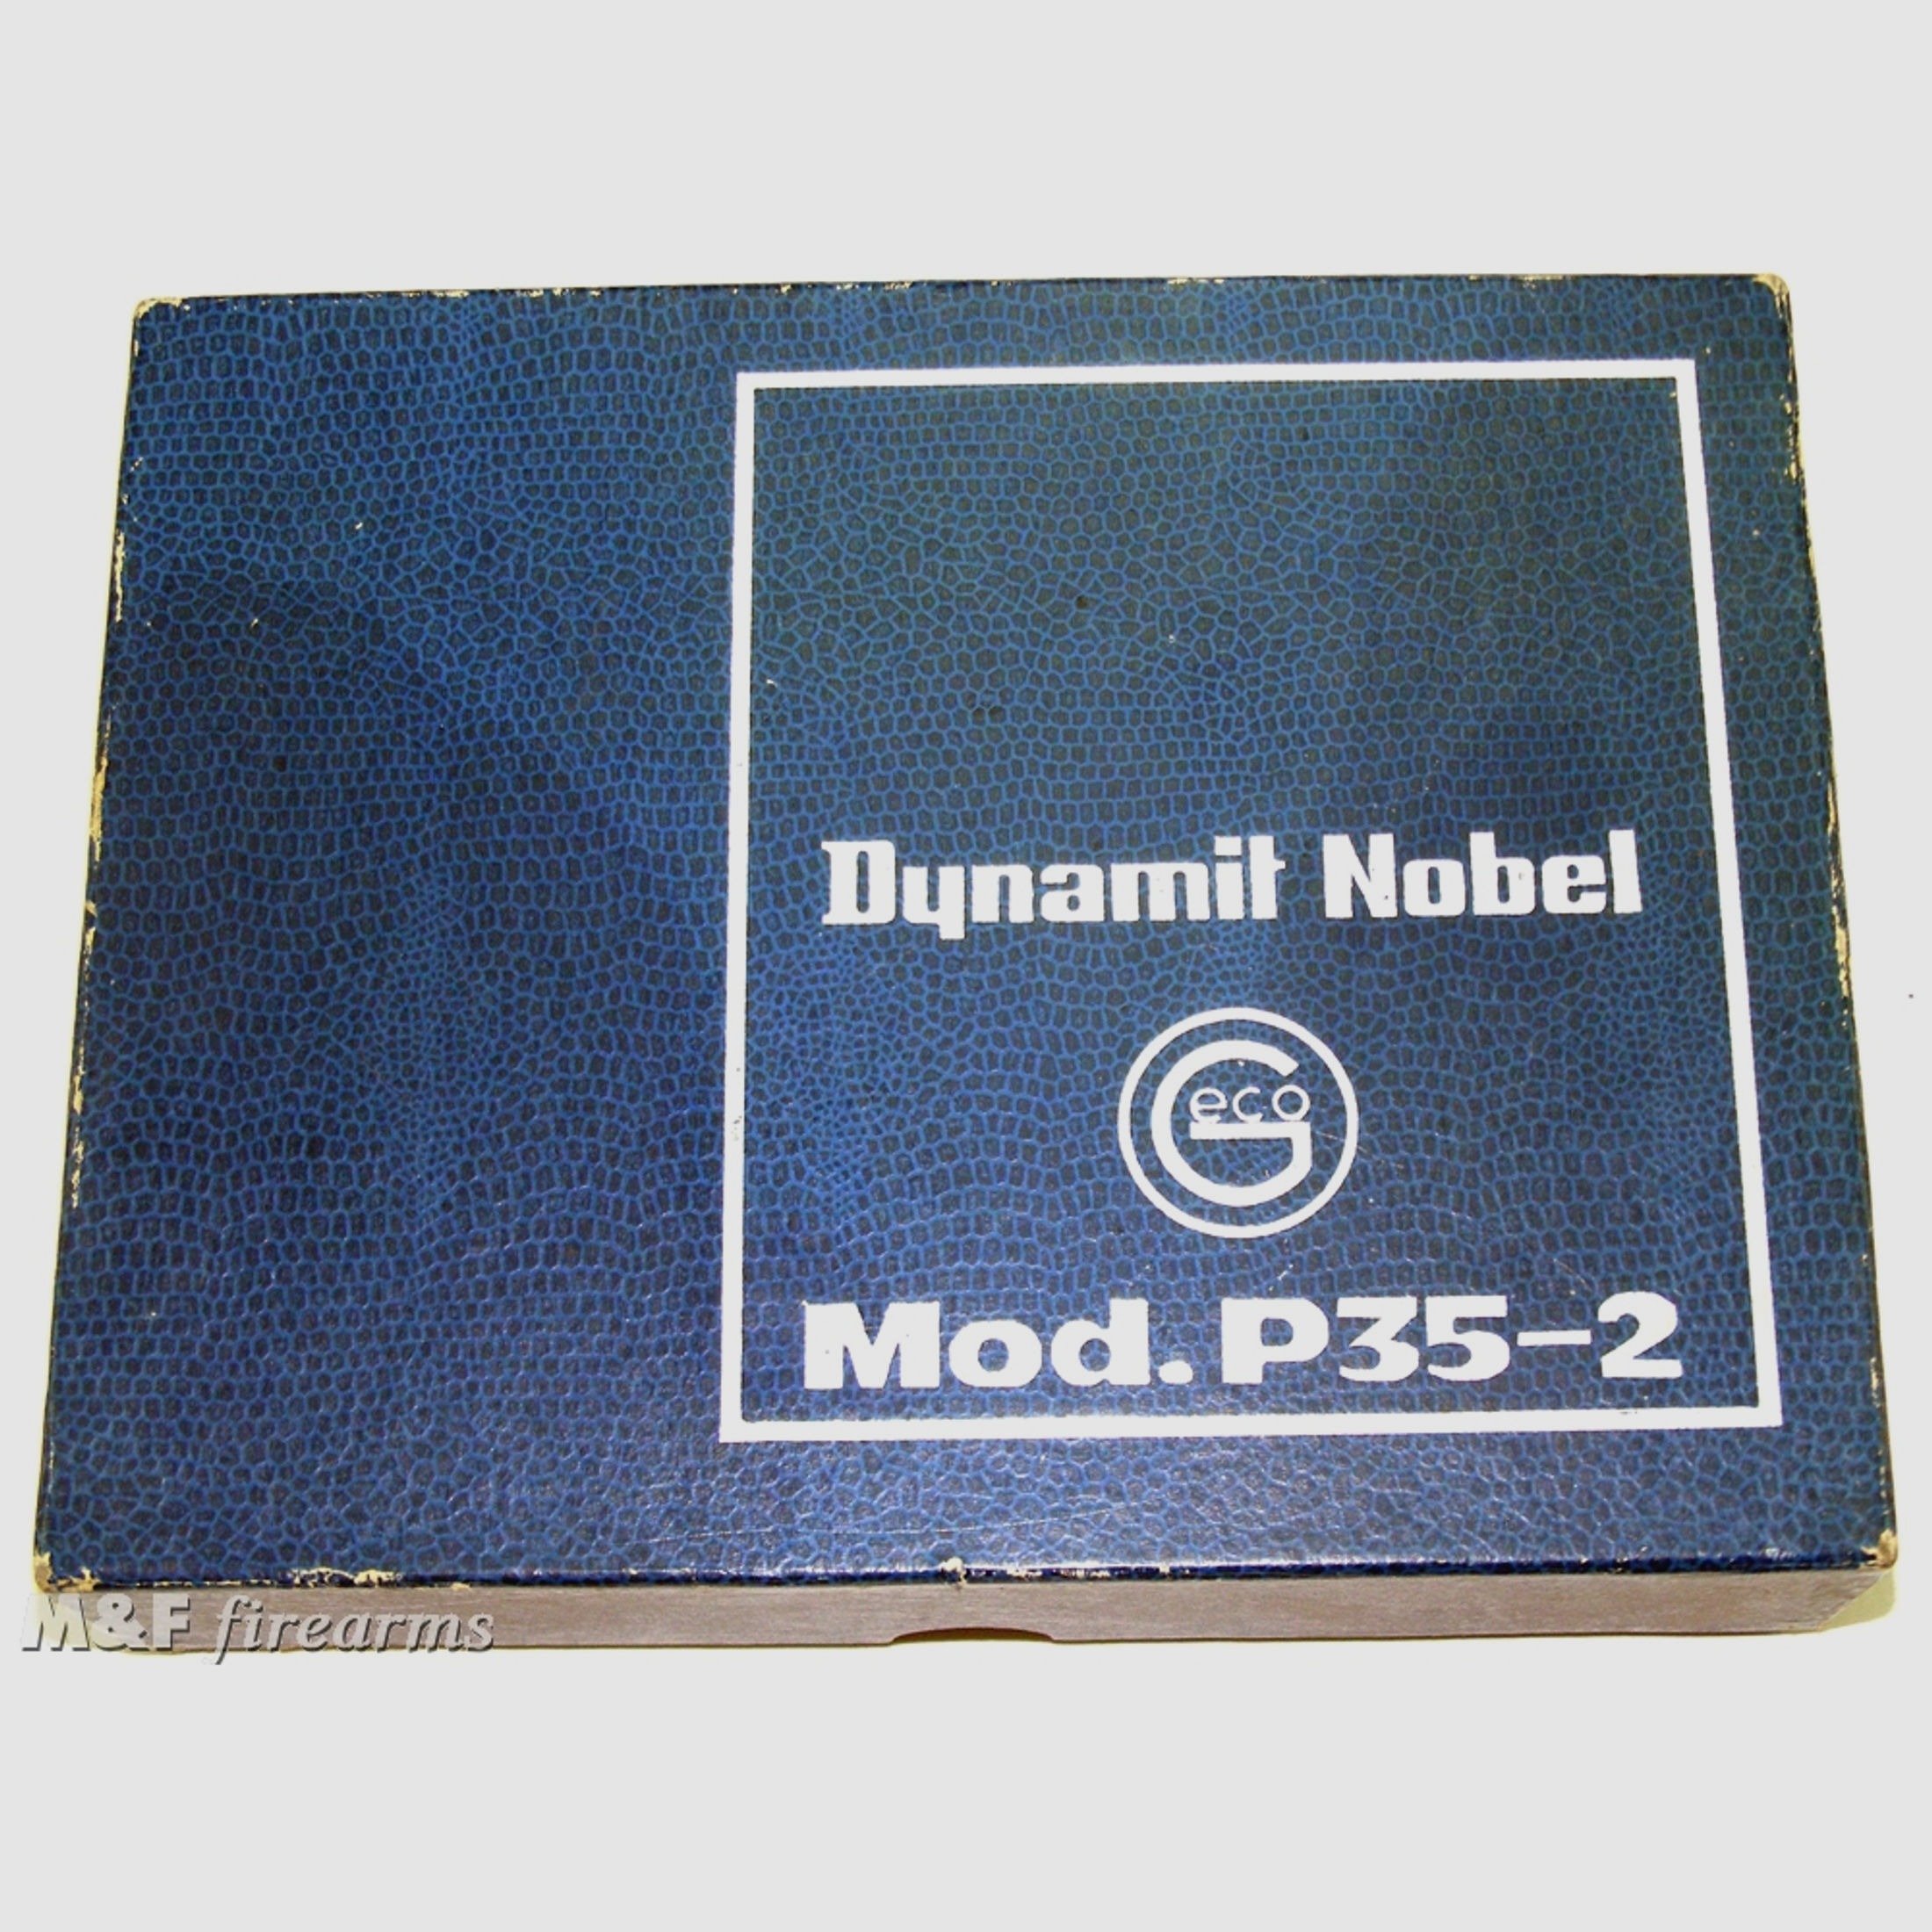 Dynamit Nobel GECO Mod. P35-2 Kaliber .35 Platz